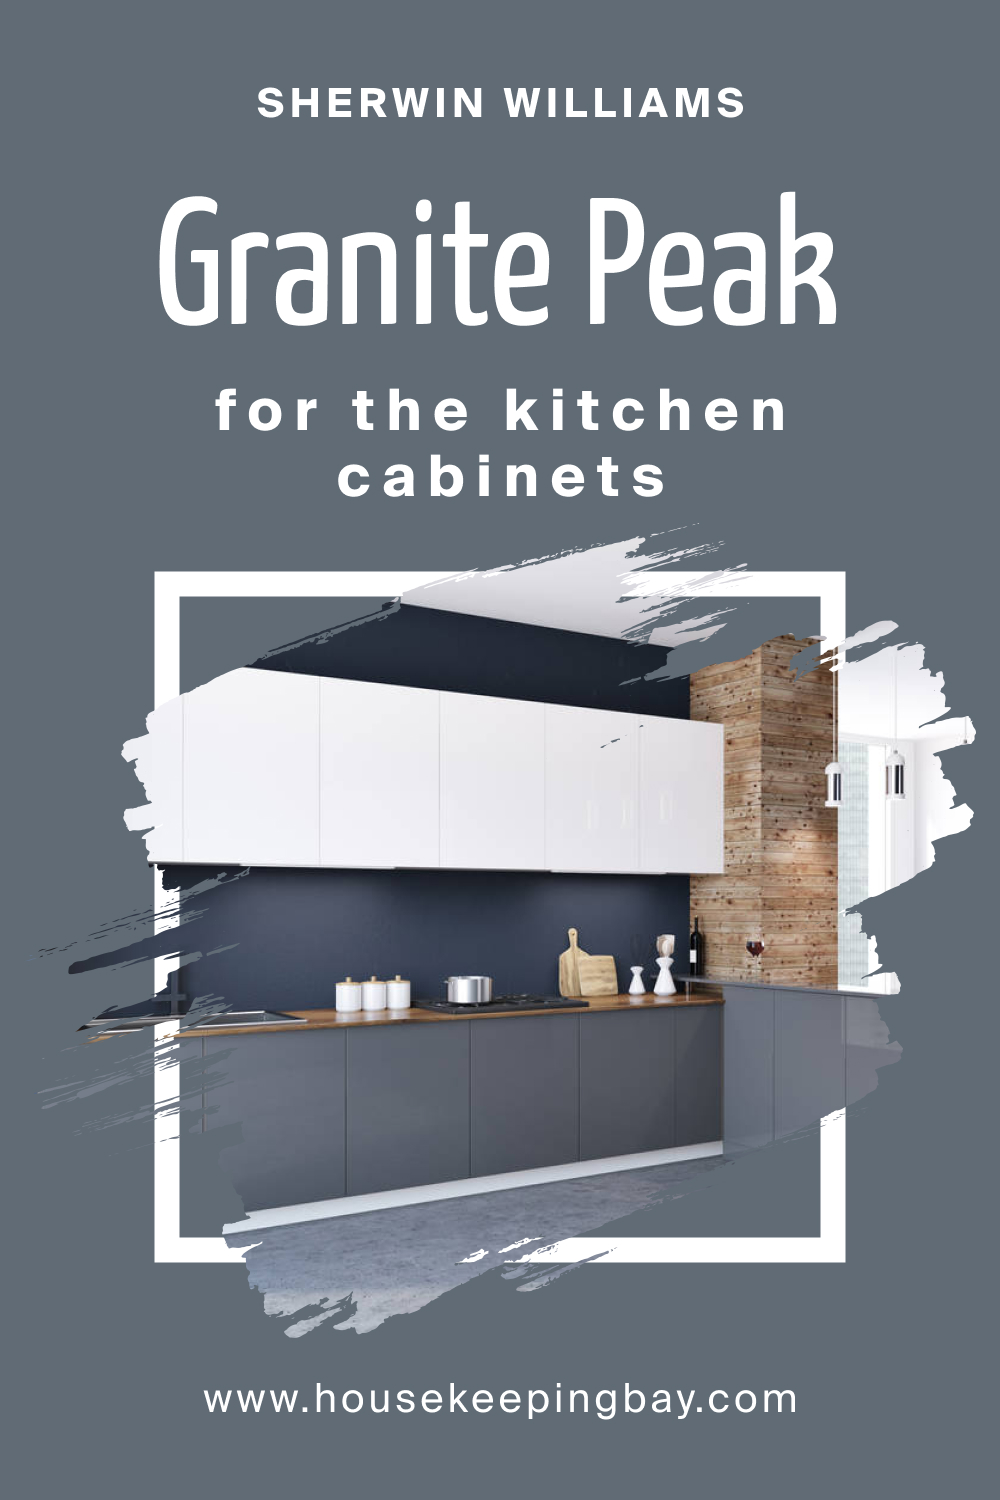 Sherwin Williams. SW 6250 Granite Peak For the Kitchen Cabinets